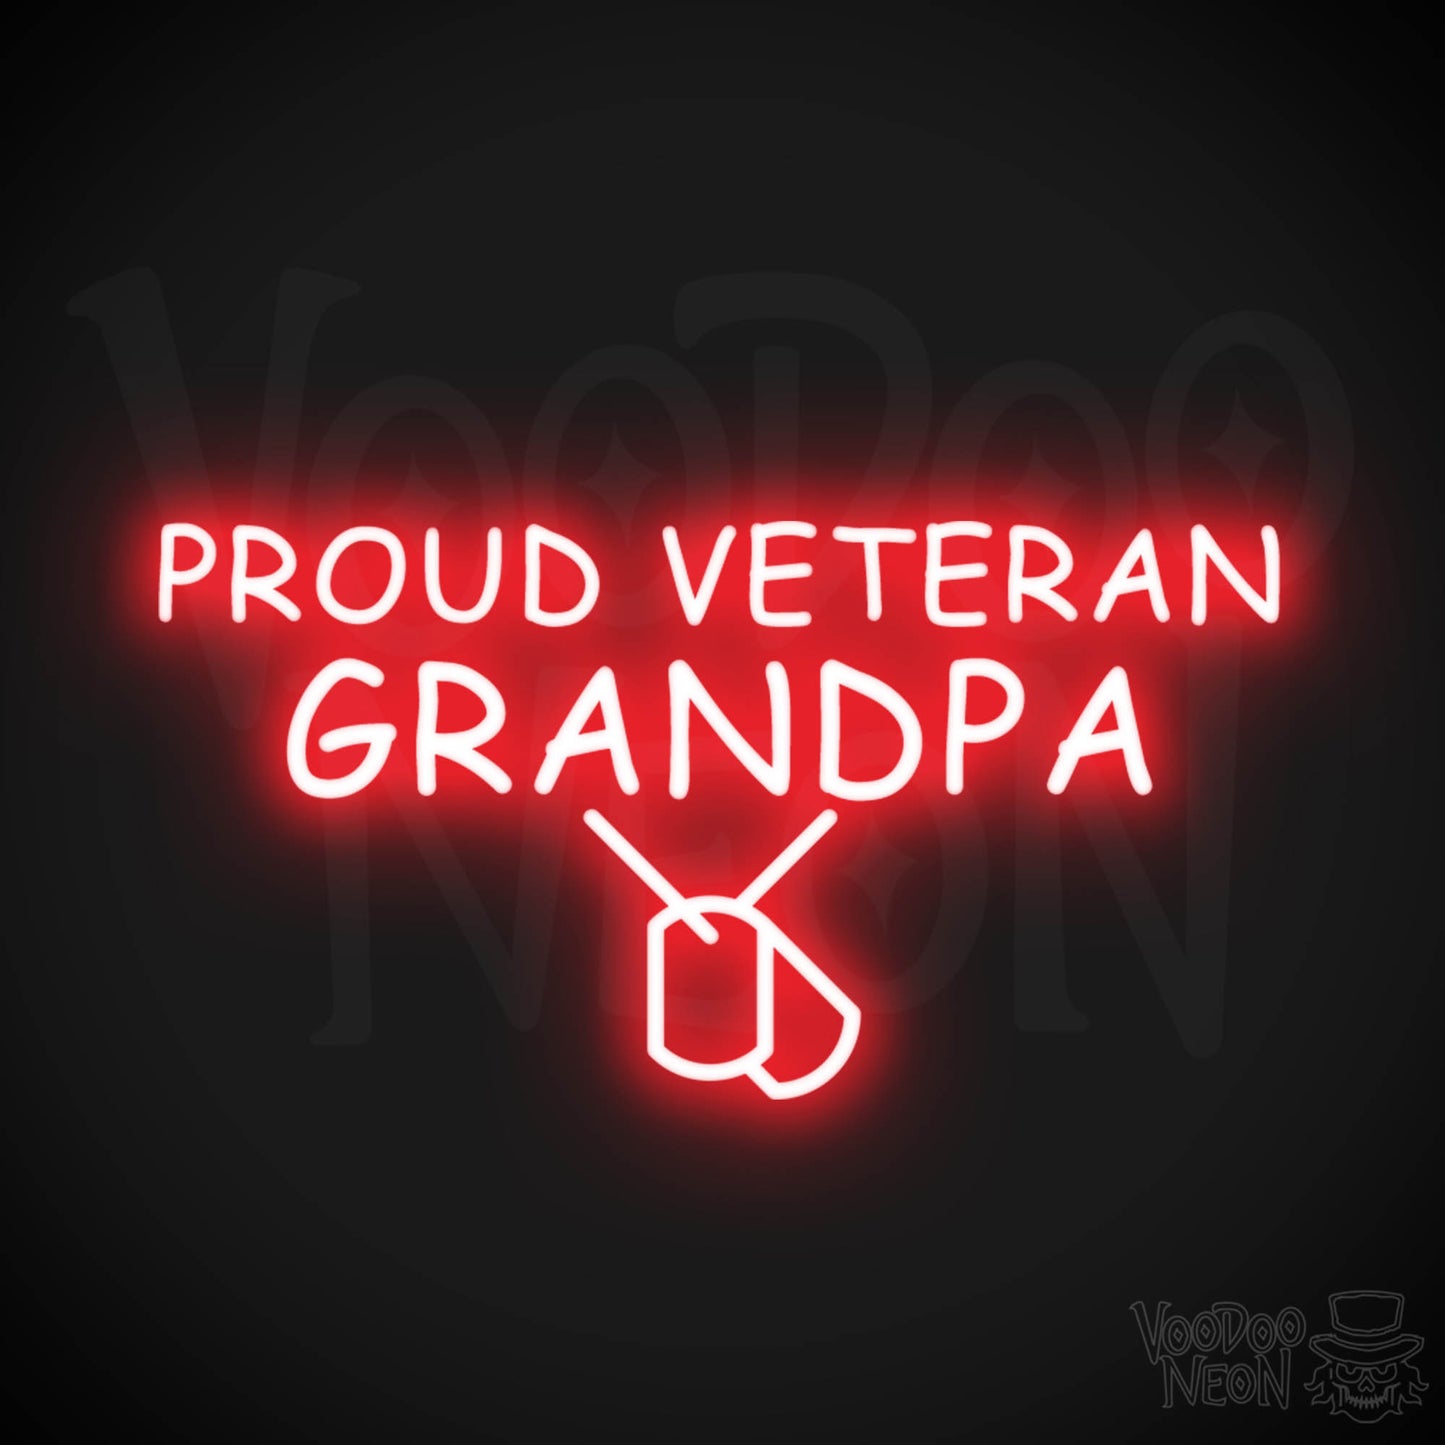 Proud Veteran Grandpa Neon Sign - Proud Veteran Grandpa Sign - Color Red